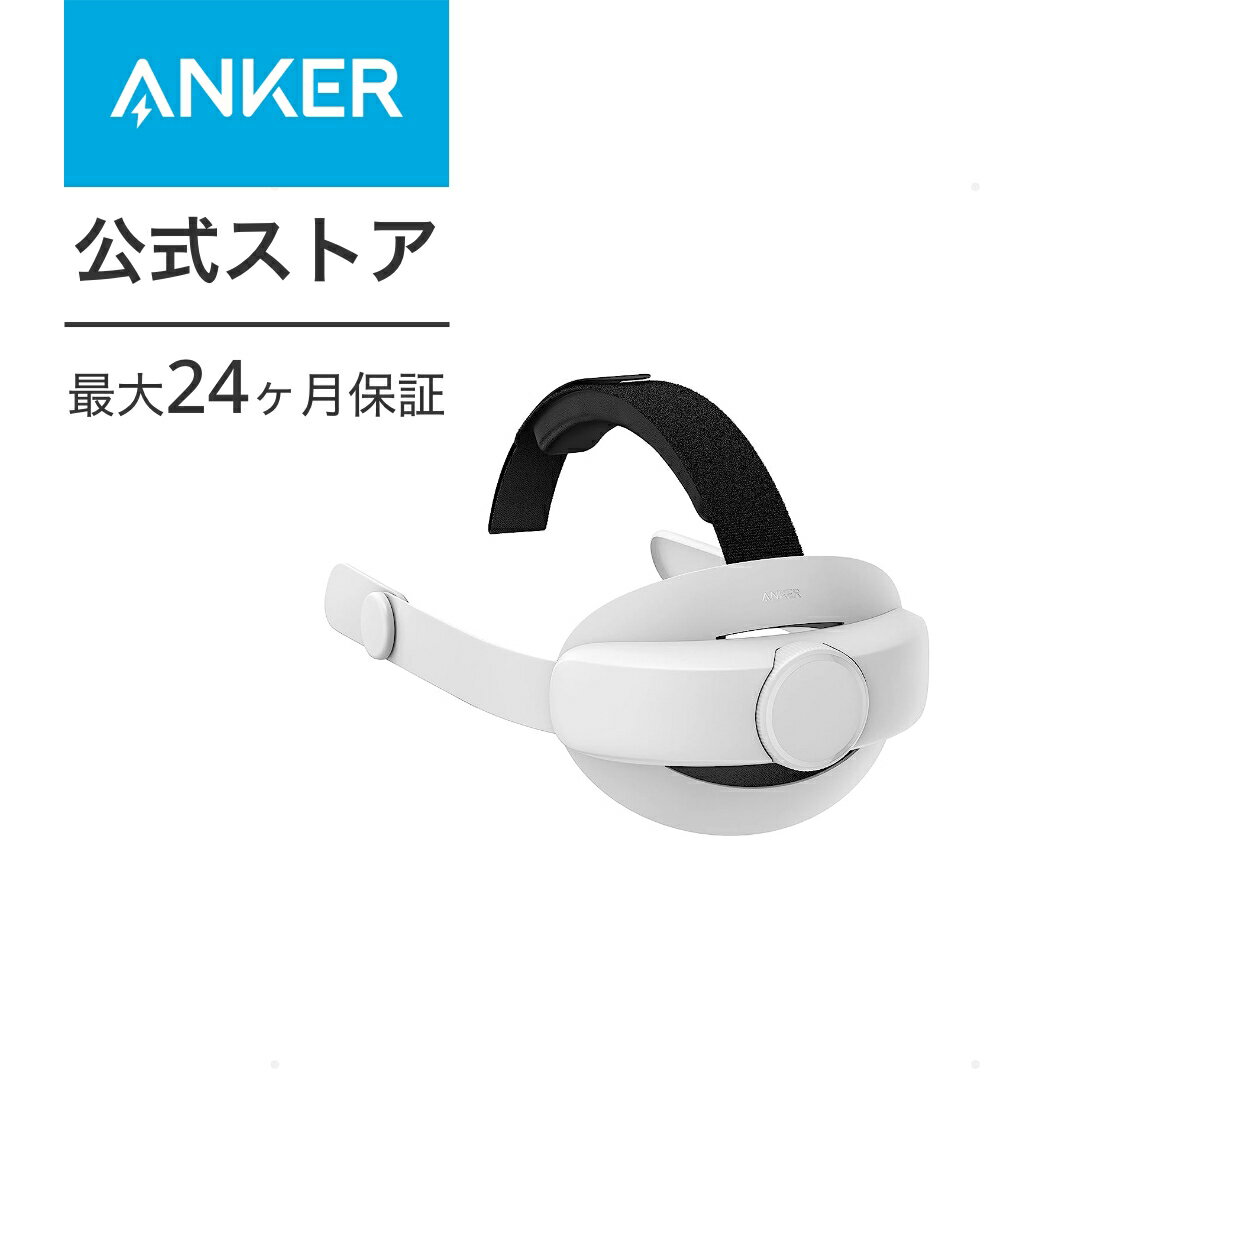 【あす楽対応】Anker Head Strap for Oculus Quest 2【Meta Quest 2/簡単装着/サイズ調節可能】ヘッドアクセサリーヘッドバンド クッションVRヘッドセット